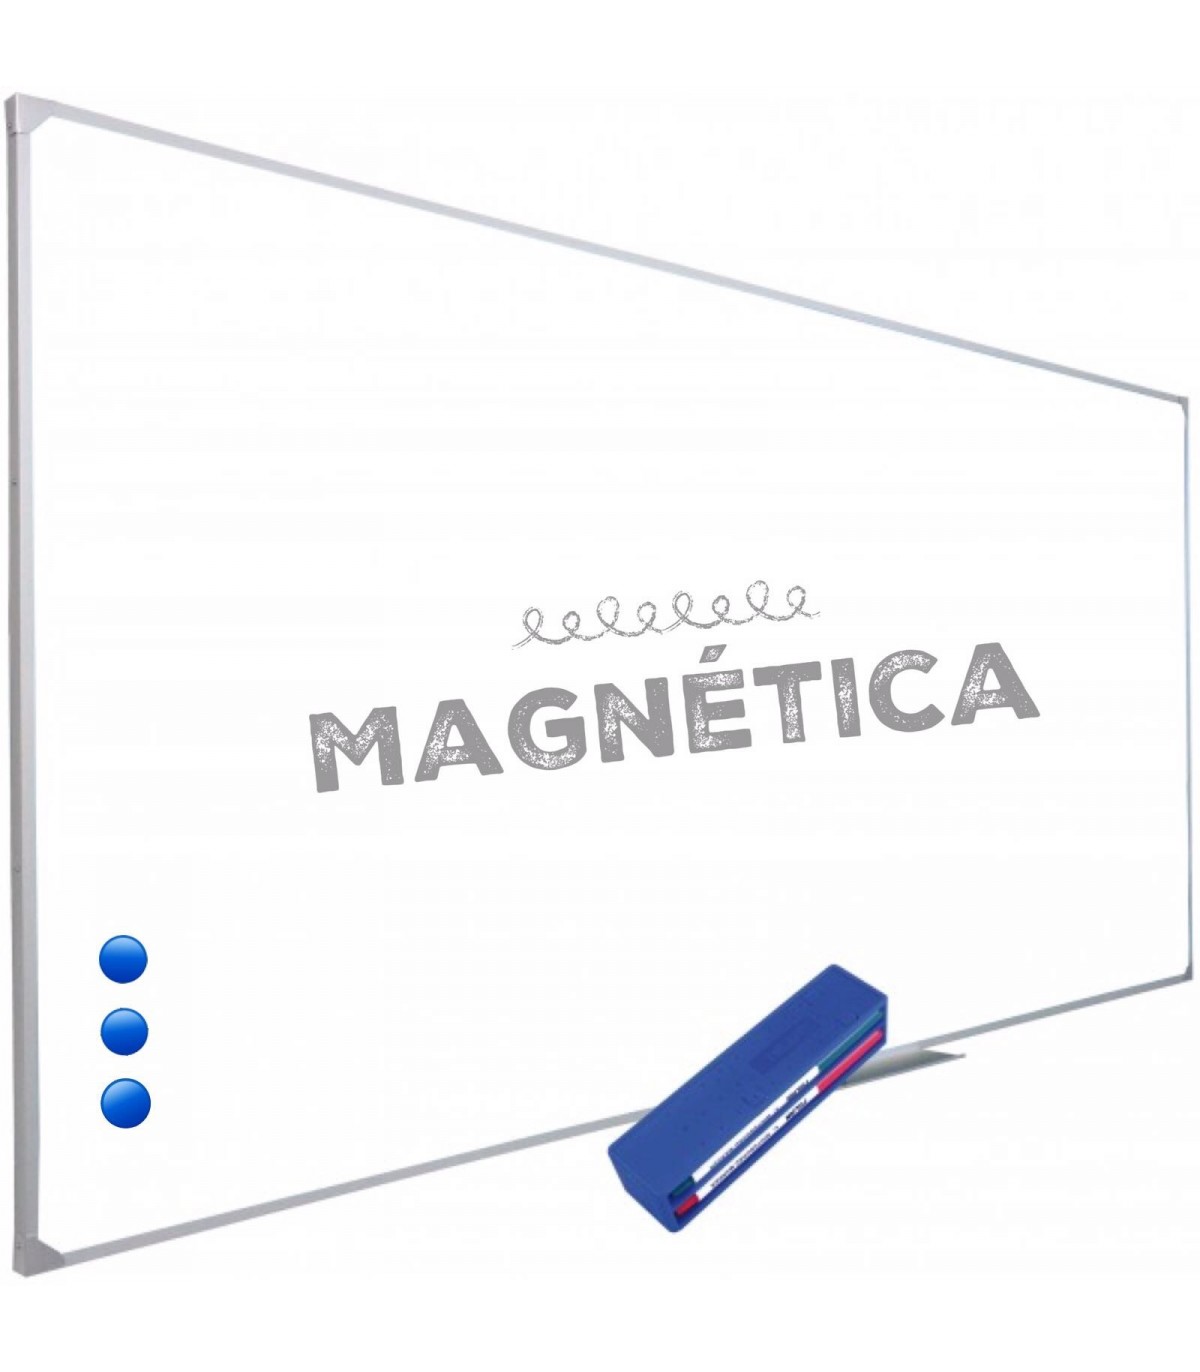 Pizarra magnética blanca para uso con rotuladores e imanes.